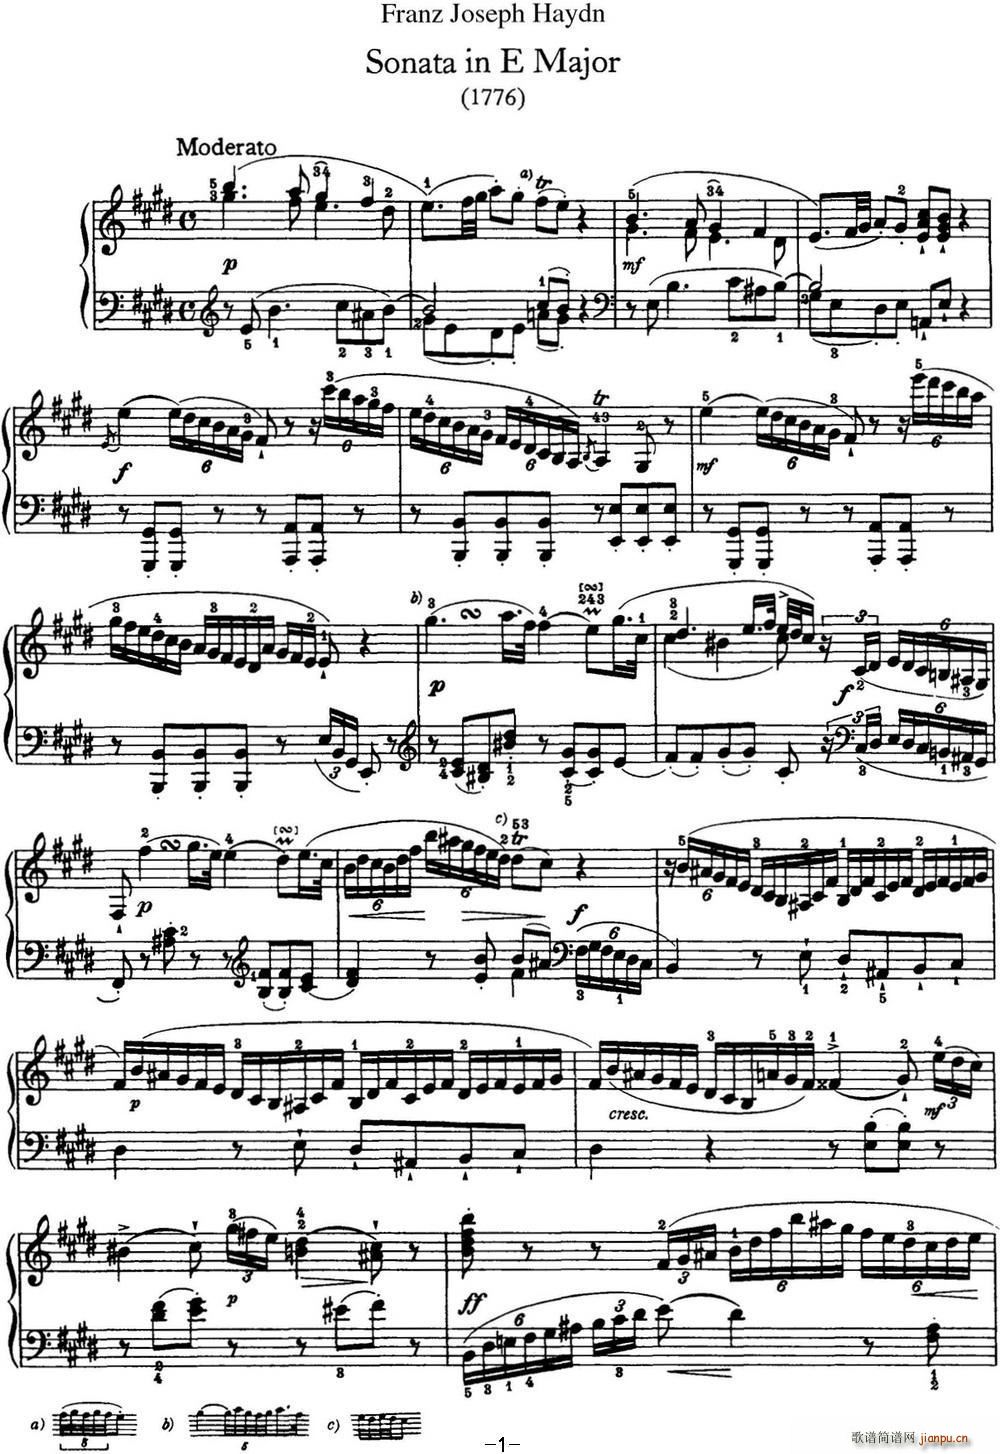   Hob XVI 31 in E major()1